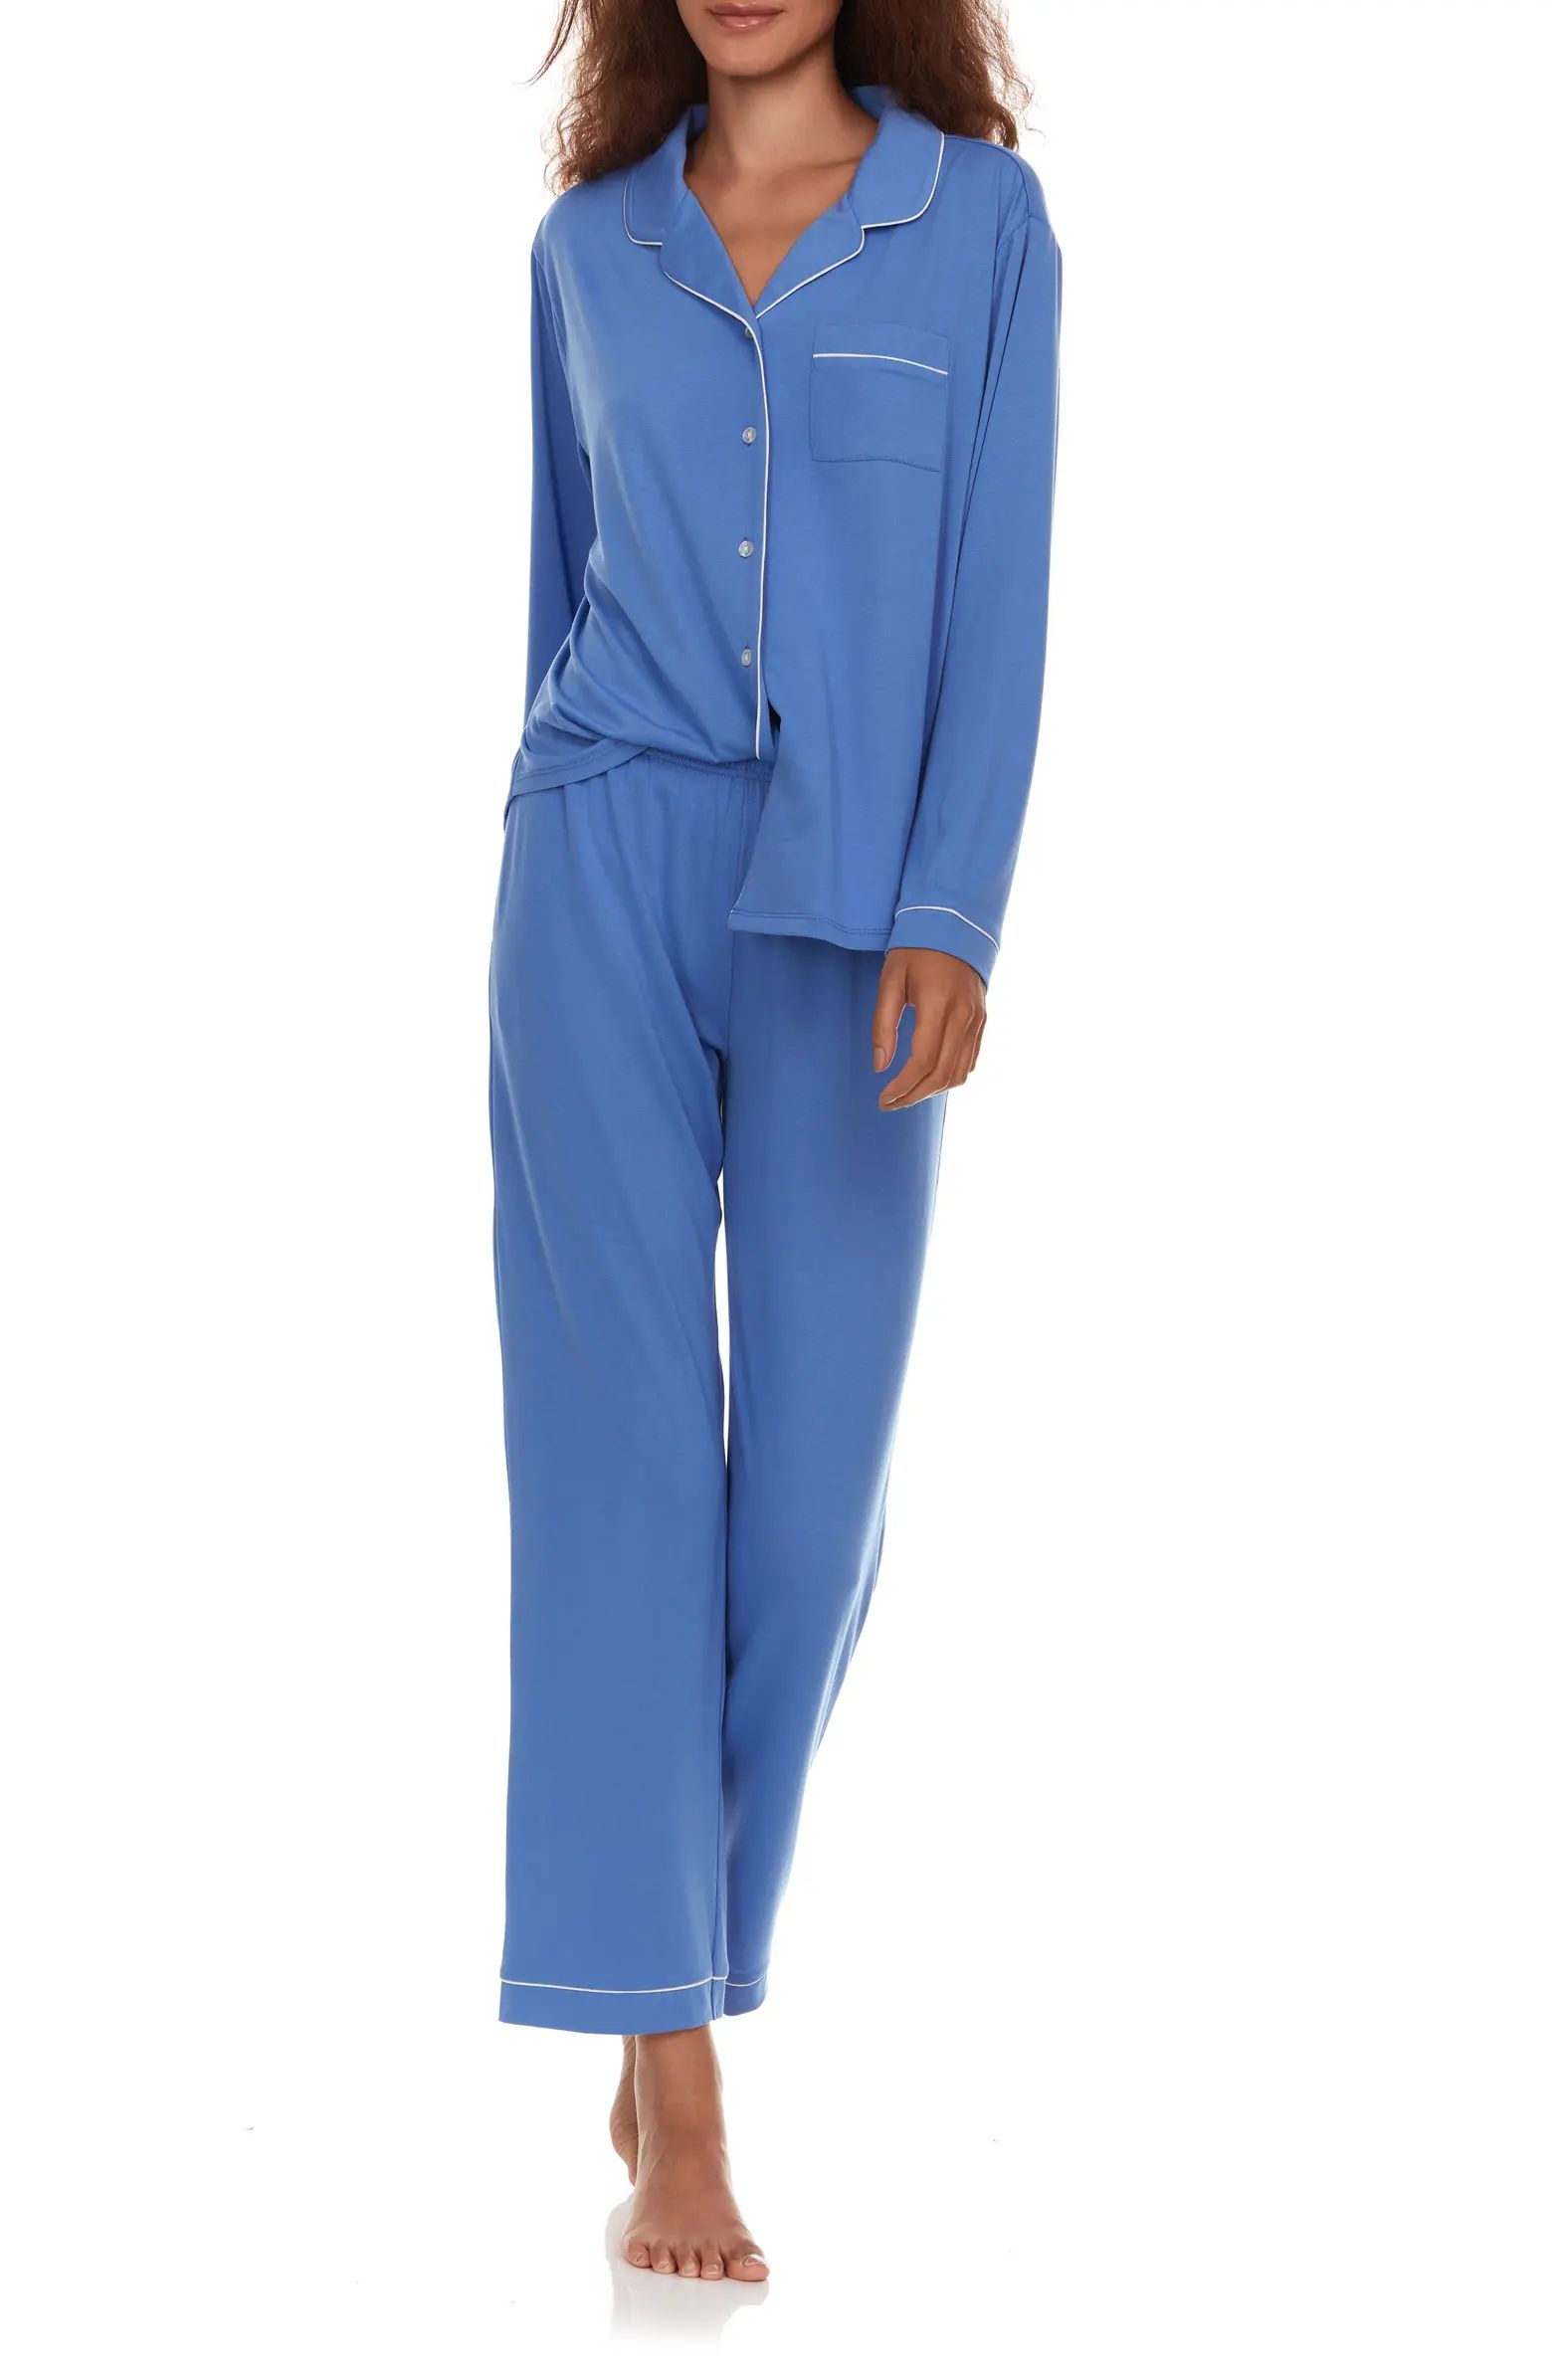 Annie Long Sleeve & Pants 2-Piece Pajama Set | Nordstrom Rack